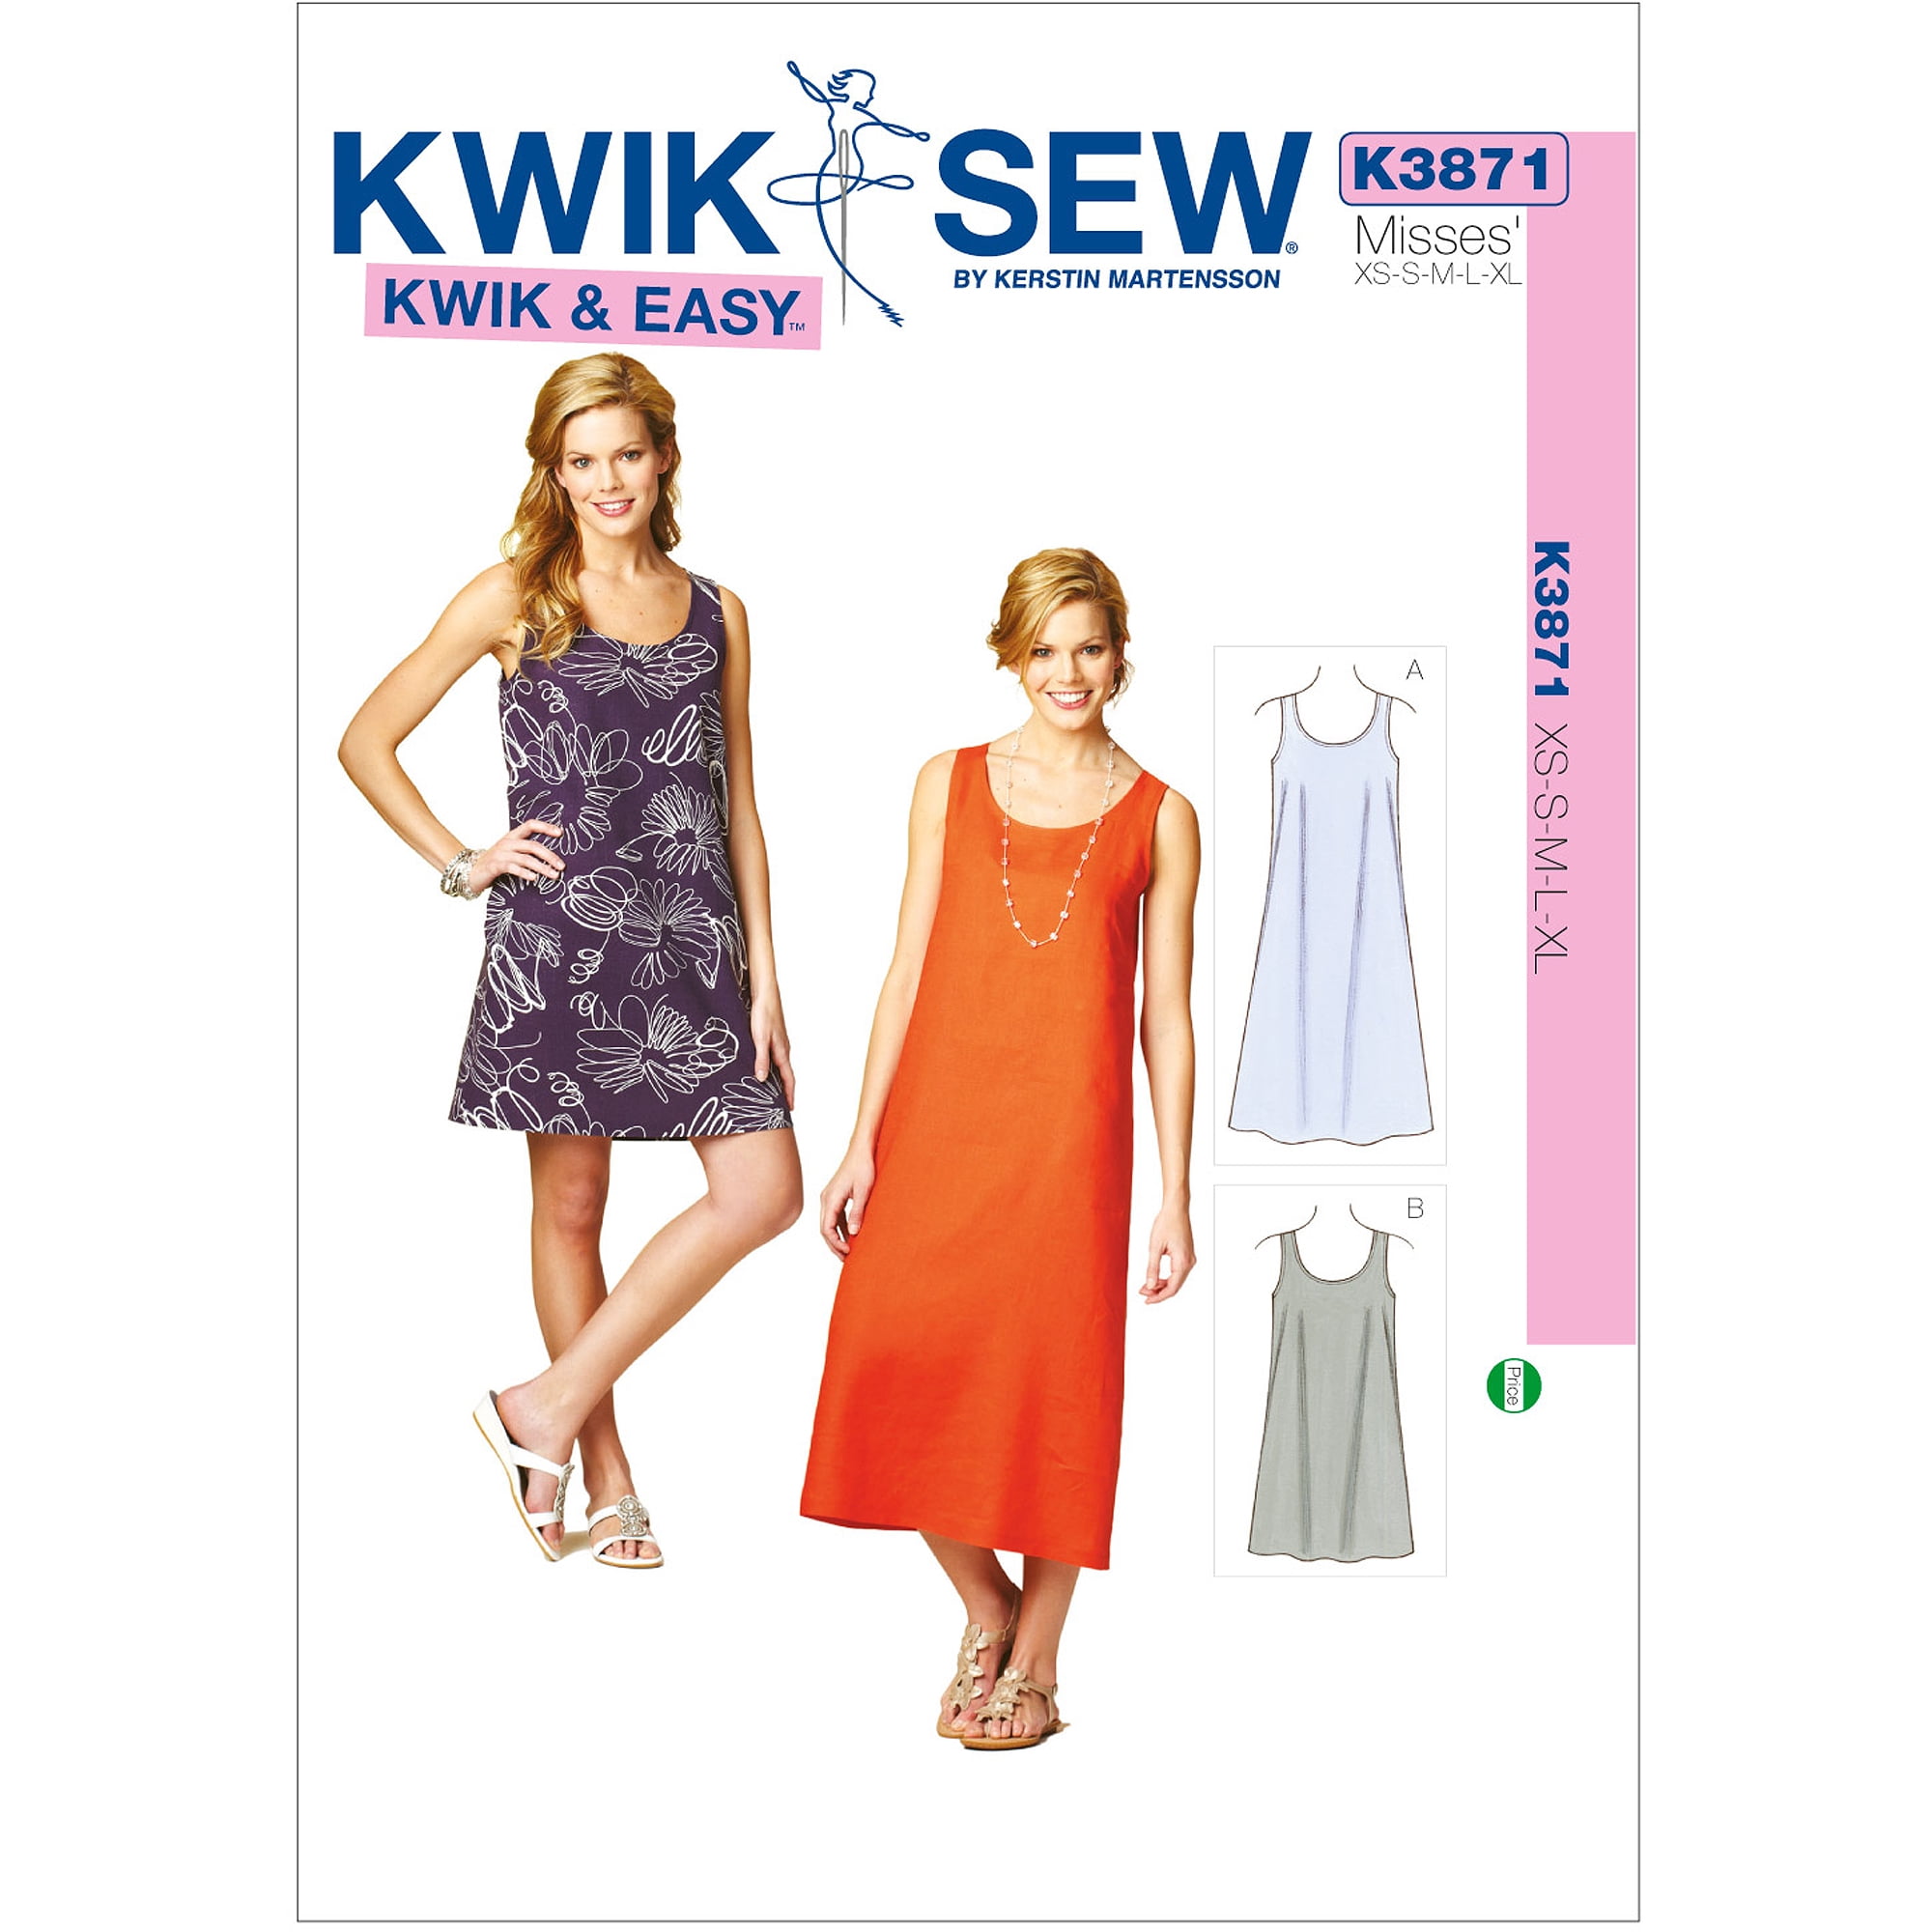 Kwik Sew 2489 Sizes XS-XL Bra Sizes 32-38 A-C - 033594248930